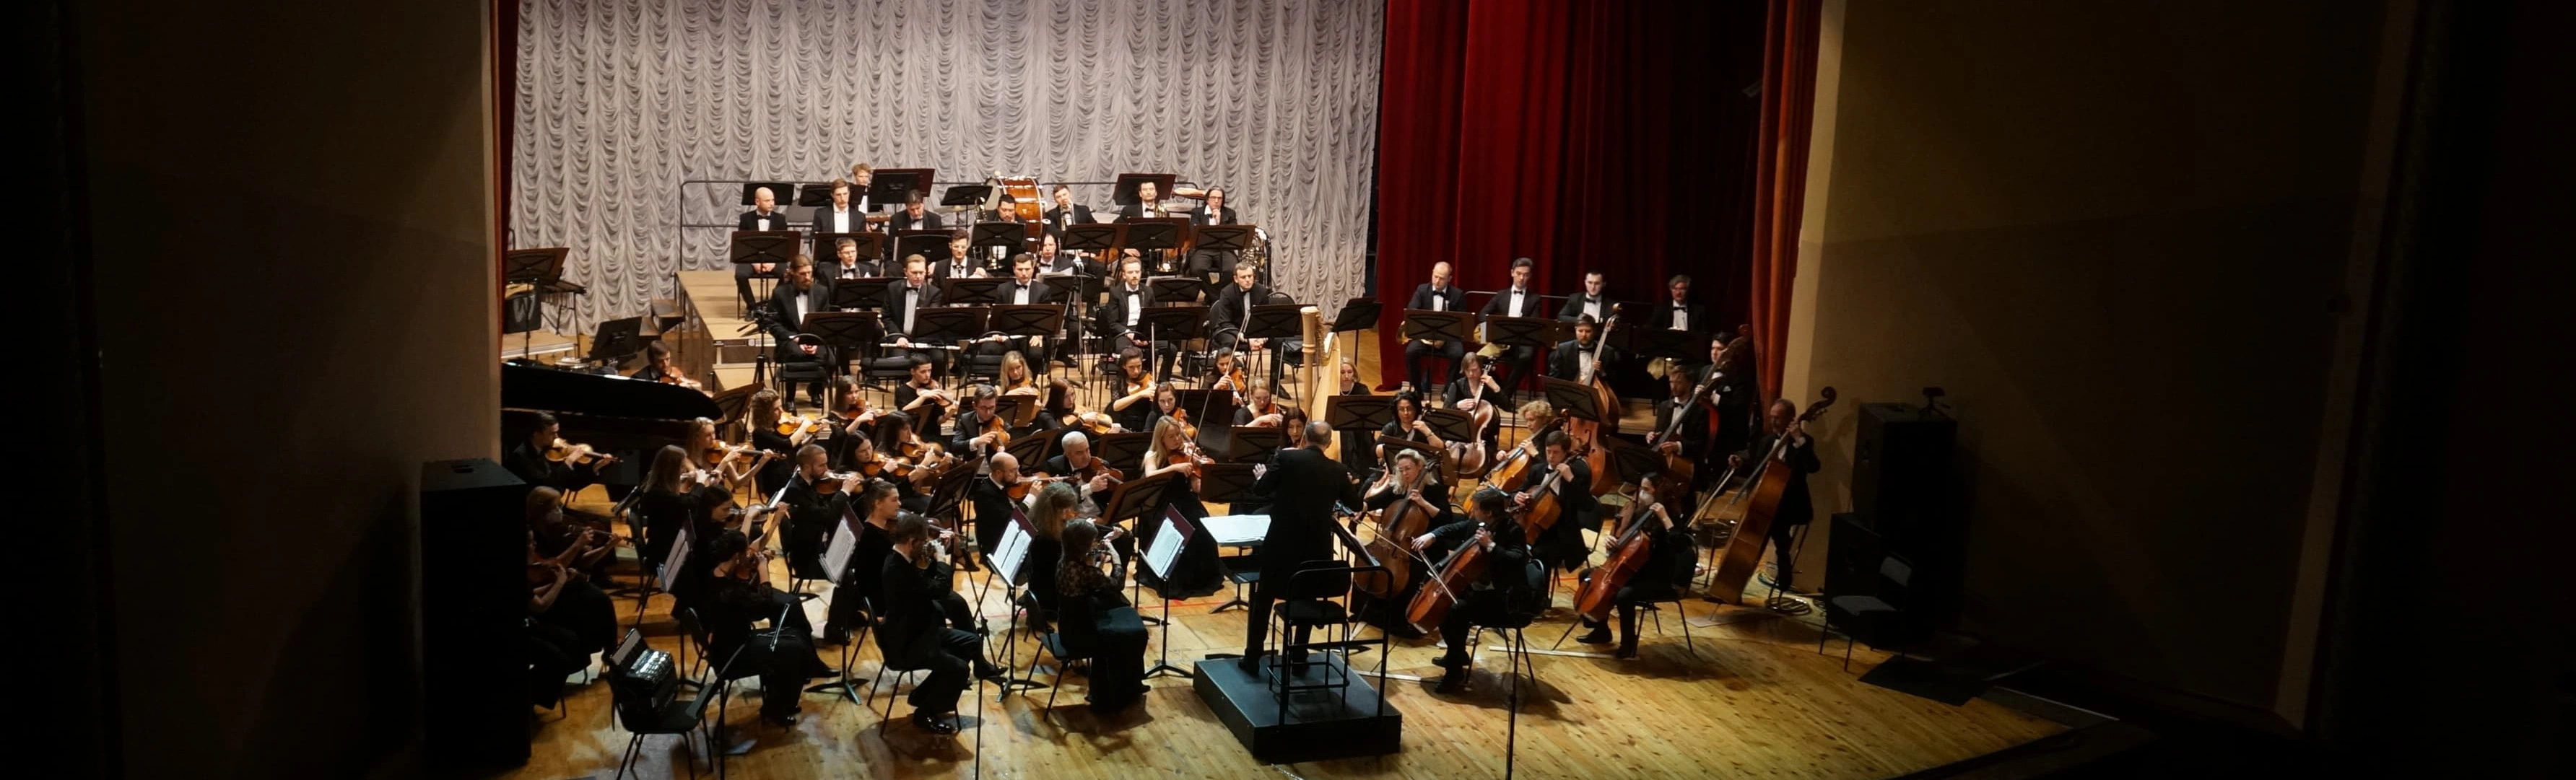 Концерт Кшиштофа Пендерецкого для фортепиано с оркестром «Воскресение»